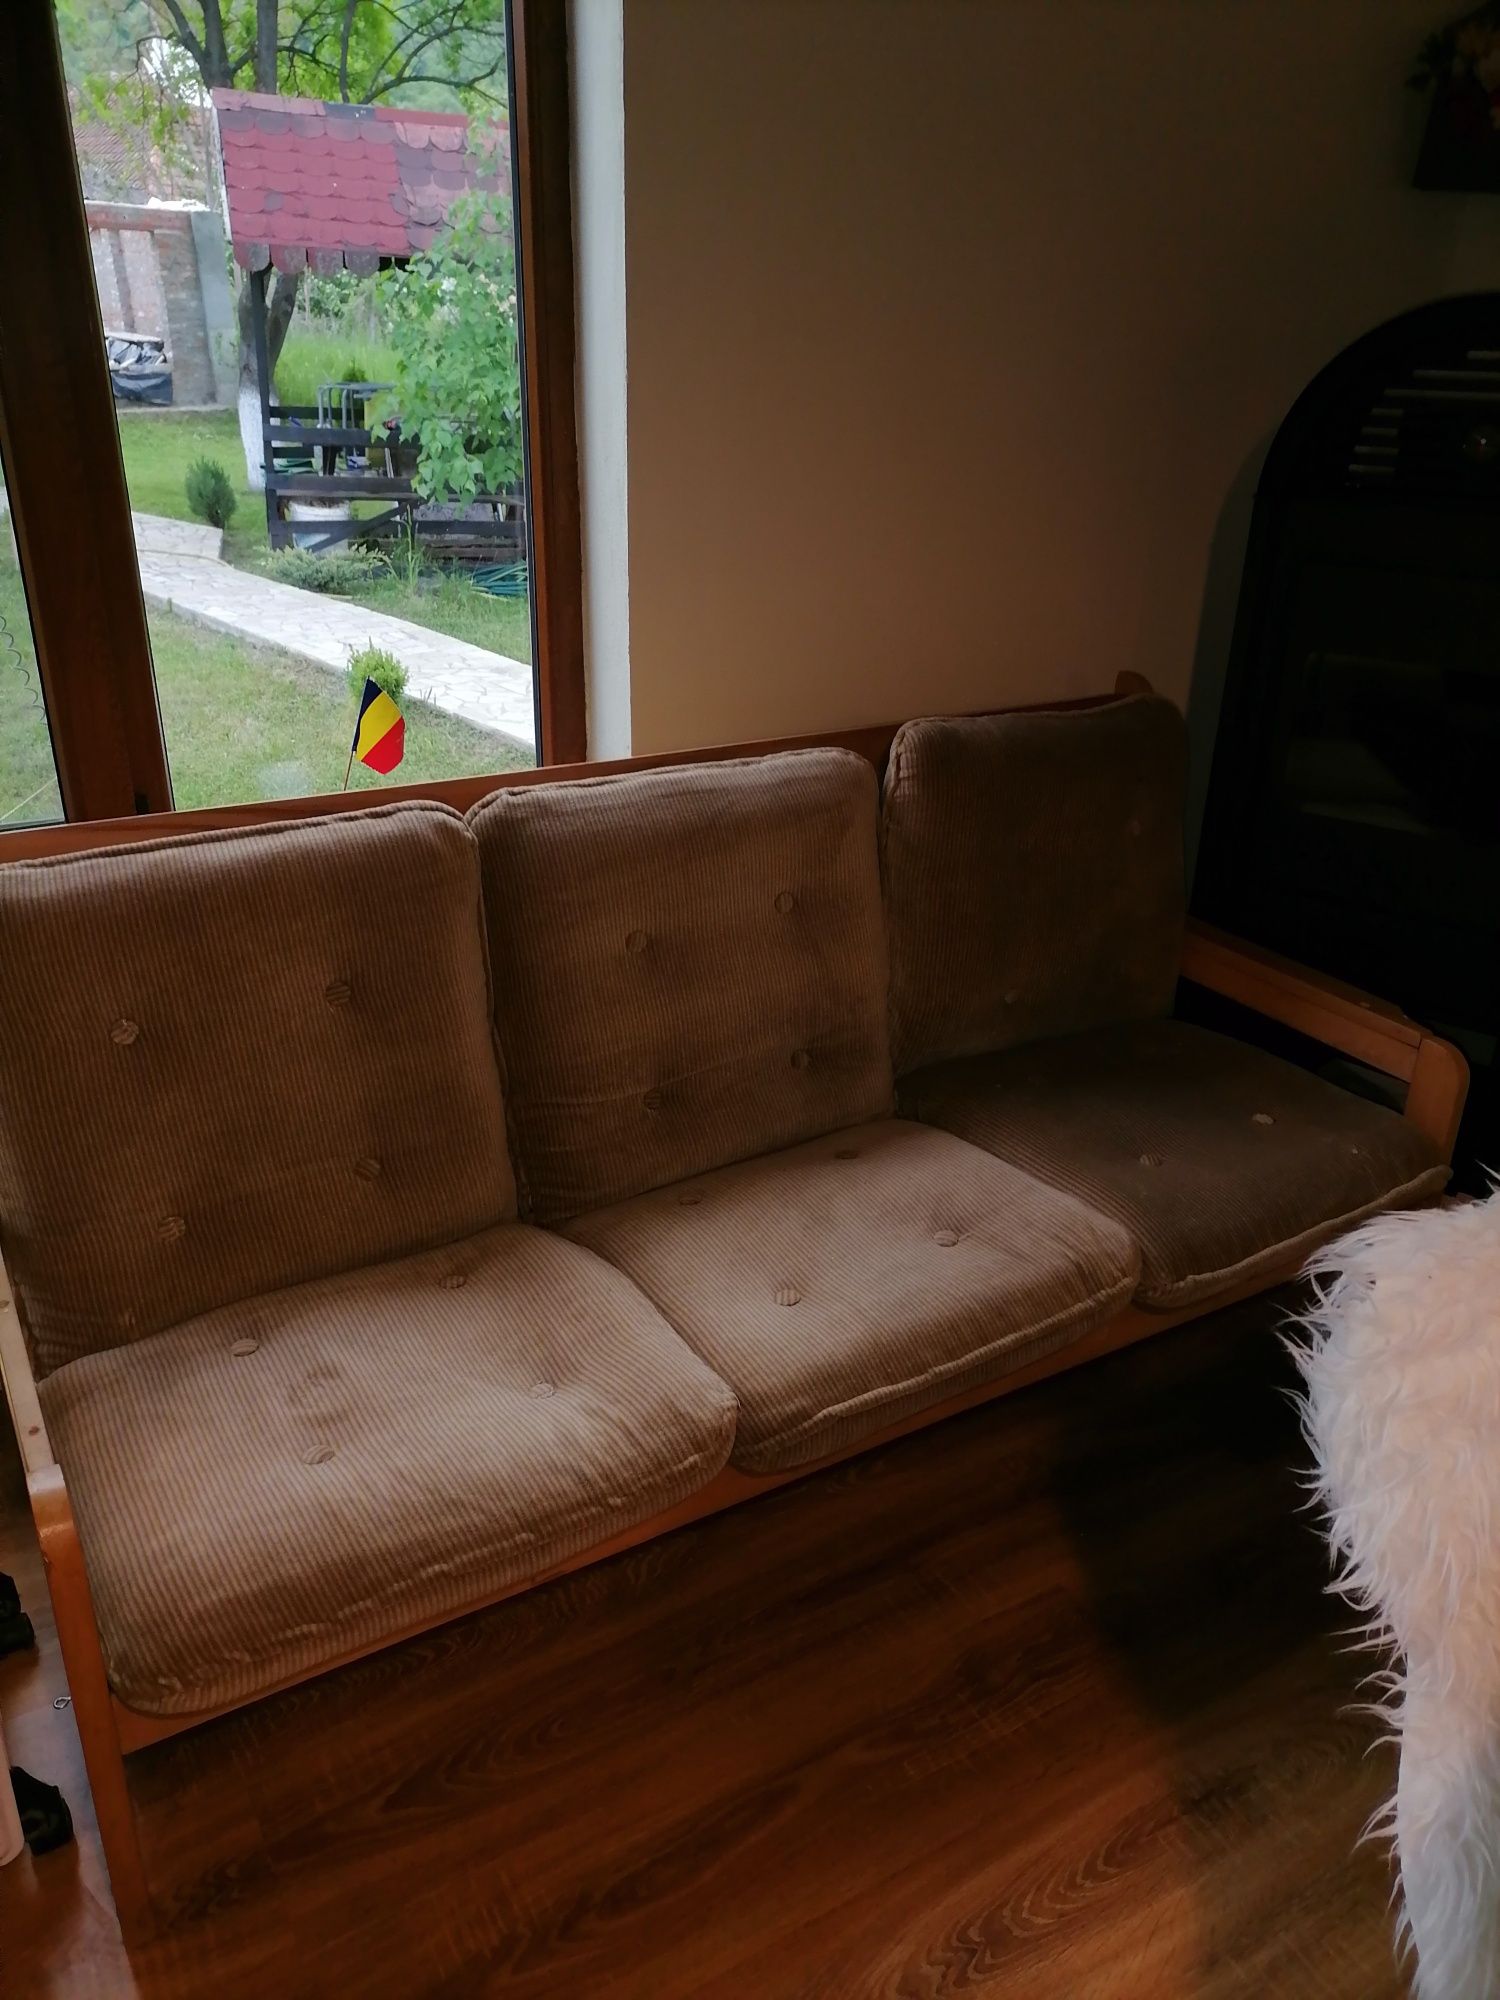 Sofa din lemn, de trei locuri cu 3 saltelute detasabile